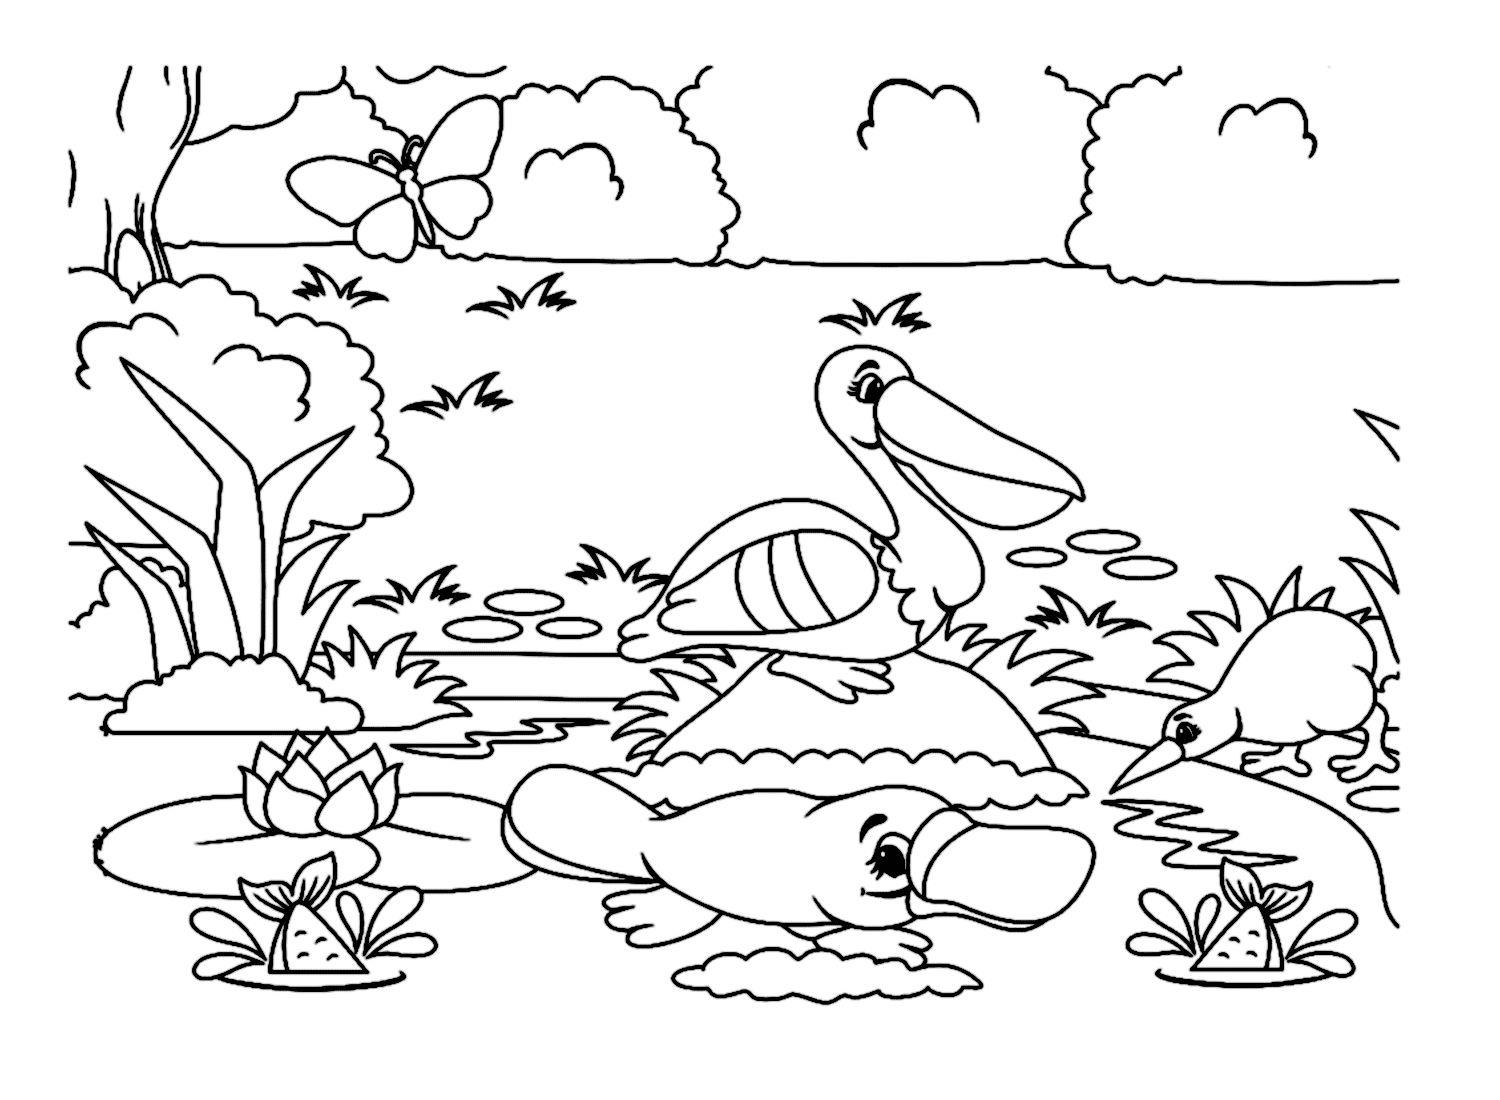 河岸上的鸭嘴兽与鸭嘴兽的其他动物